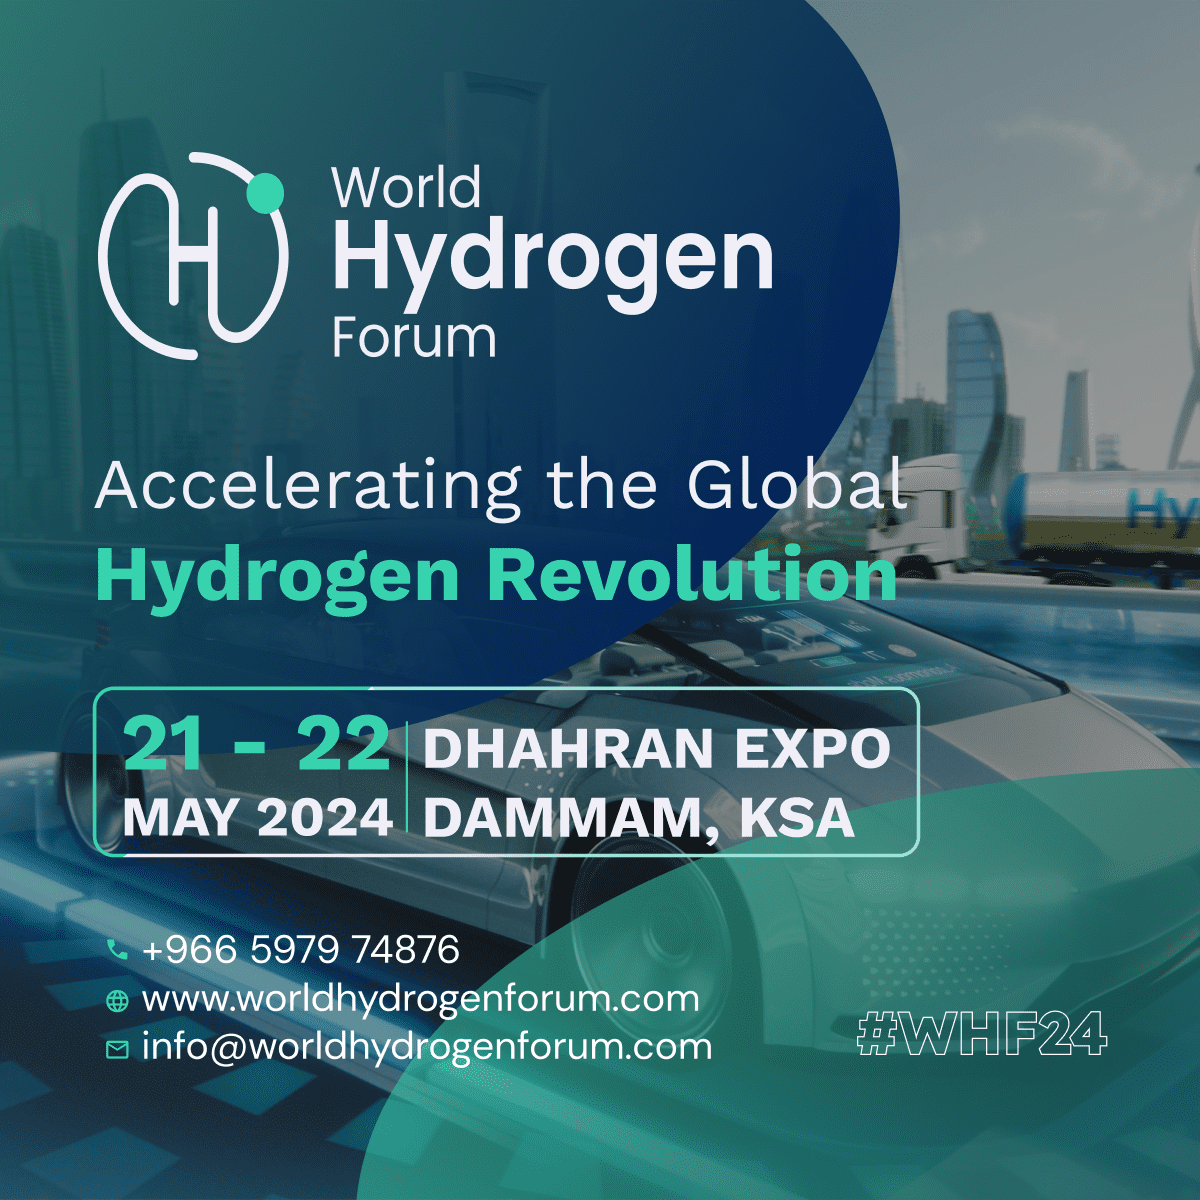 World Hydrogen Forum 2024